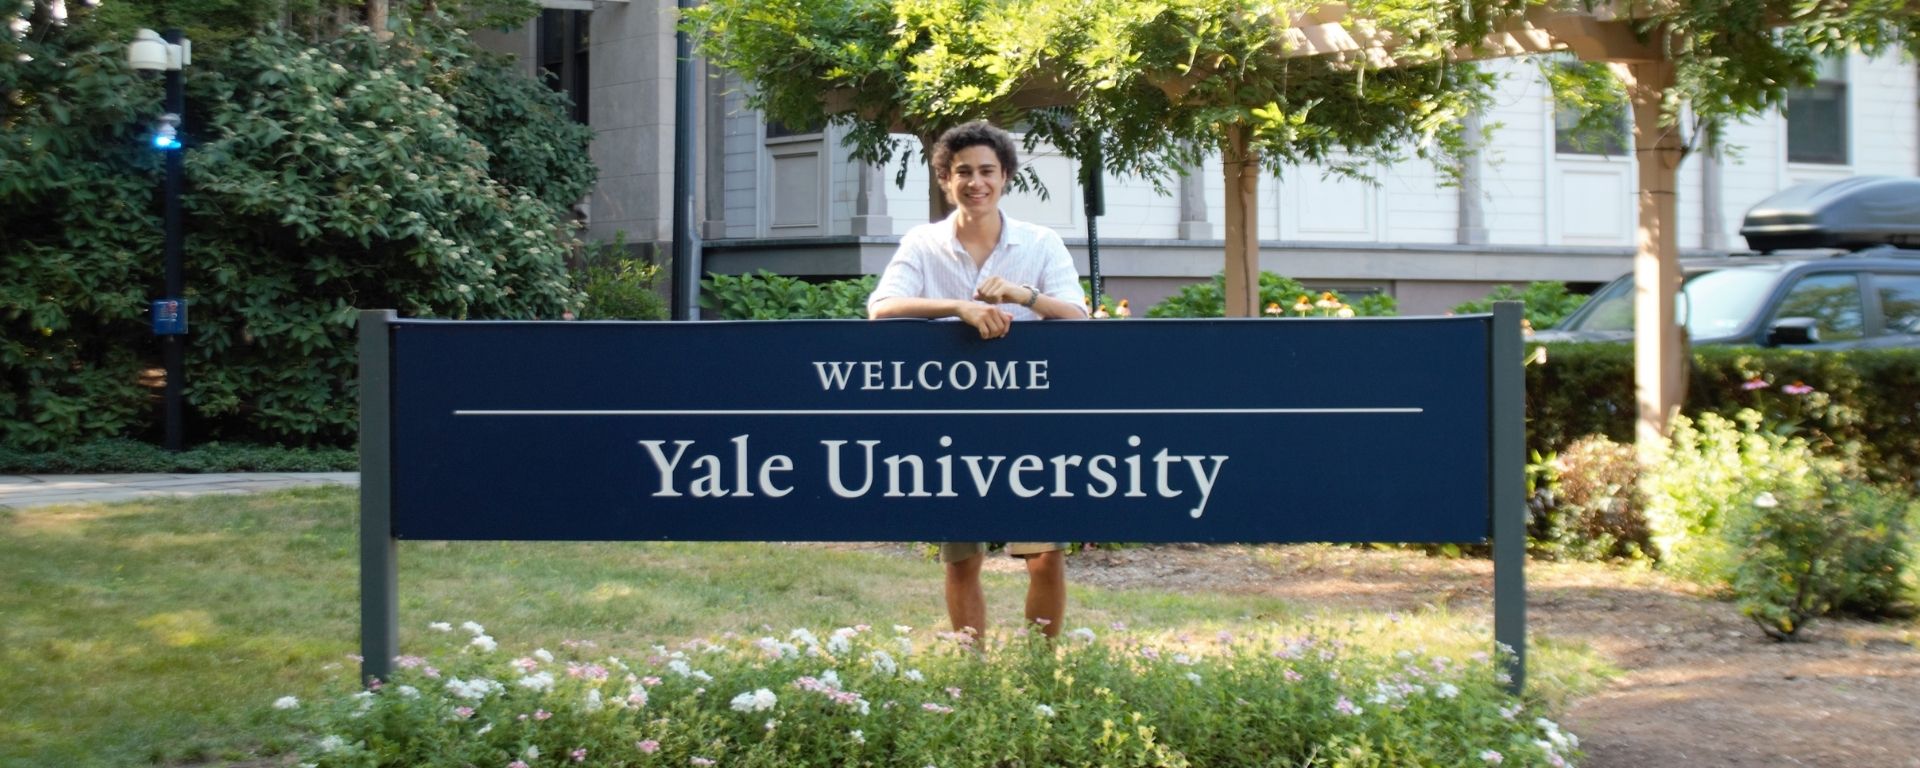 Juan Cruz Carrau en Yale University